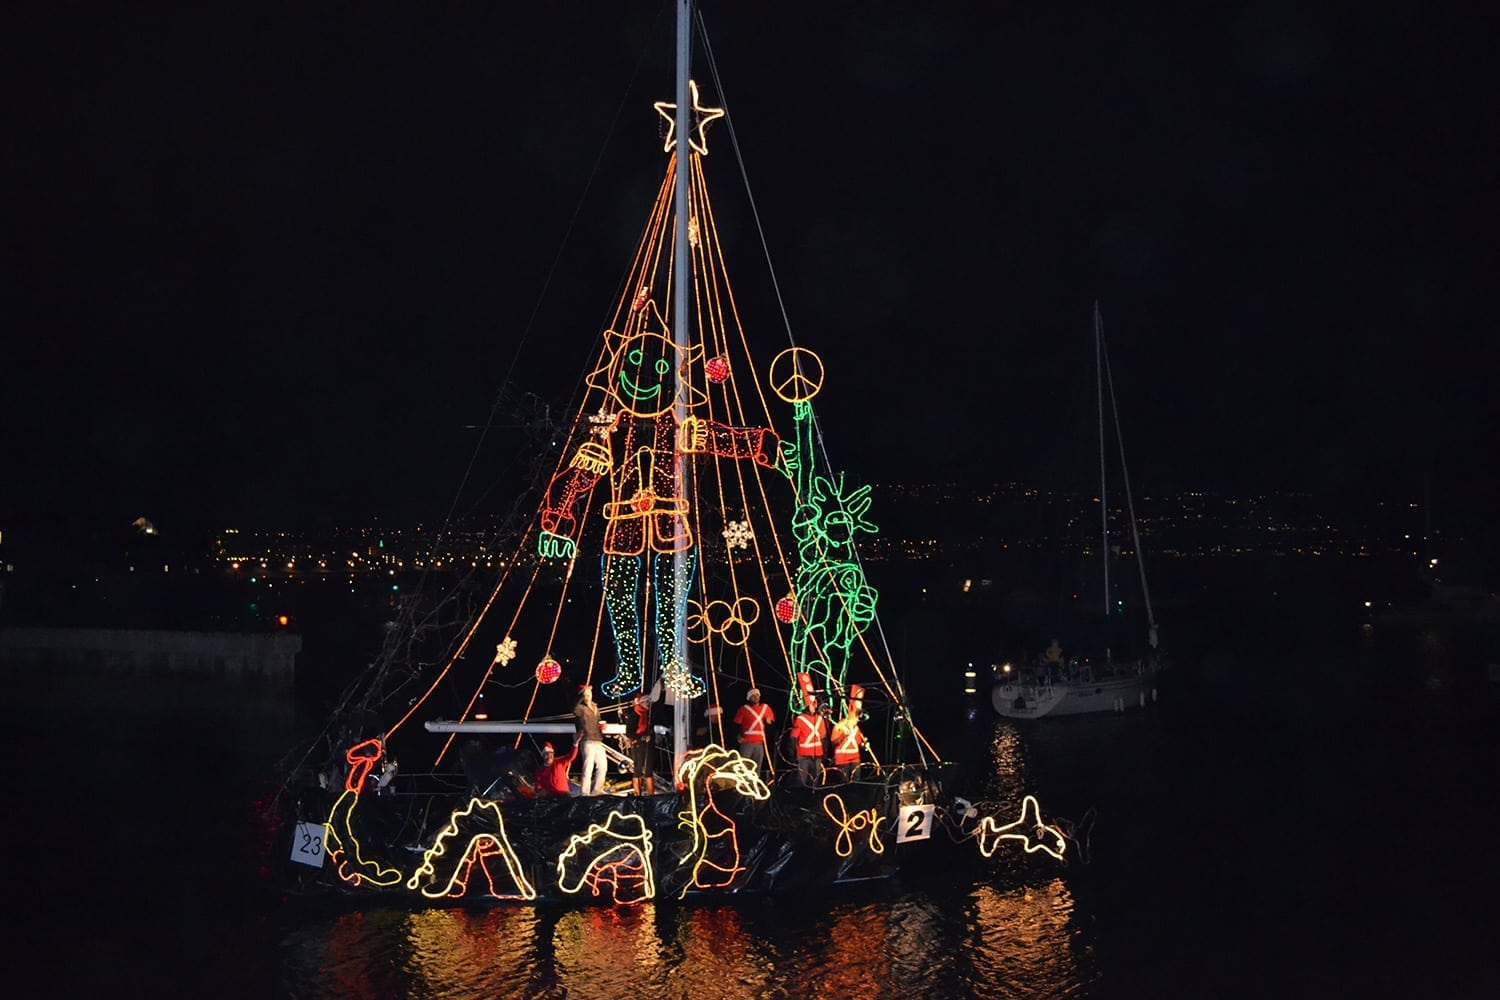 King Harbor Holiday Boat Parade